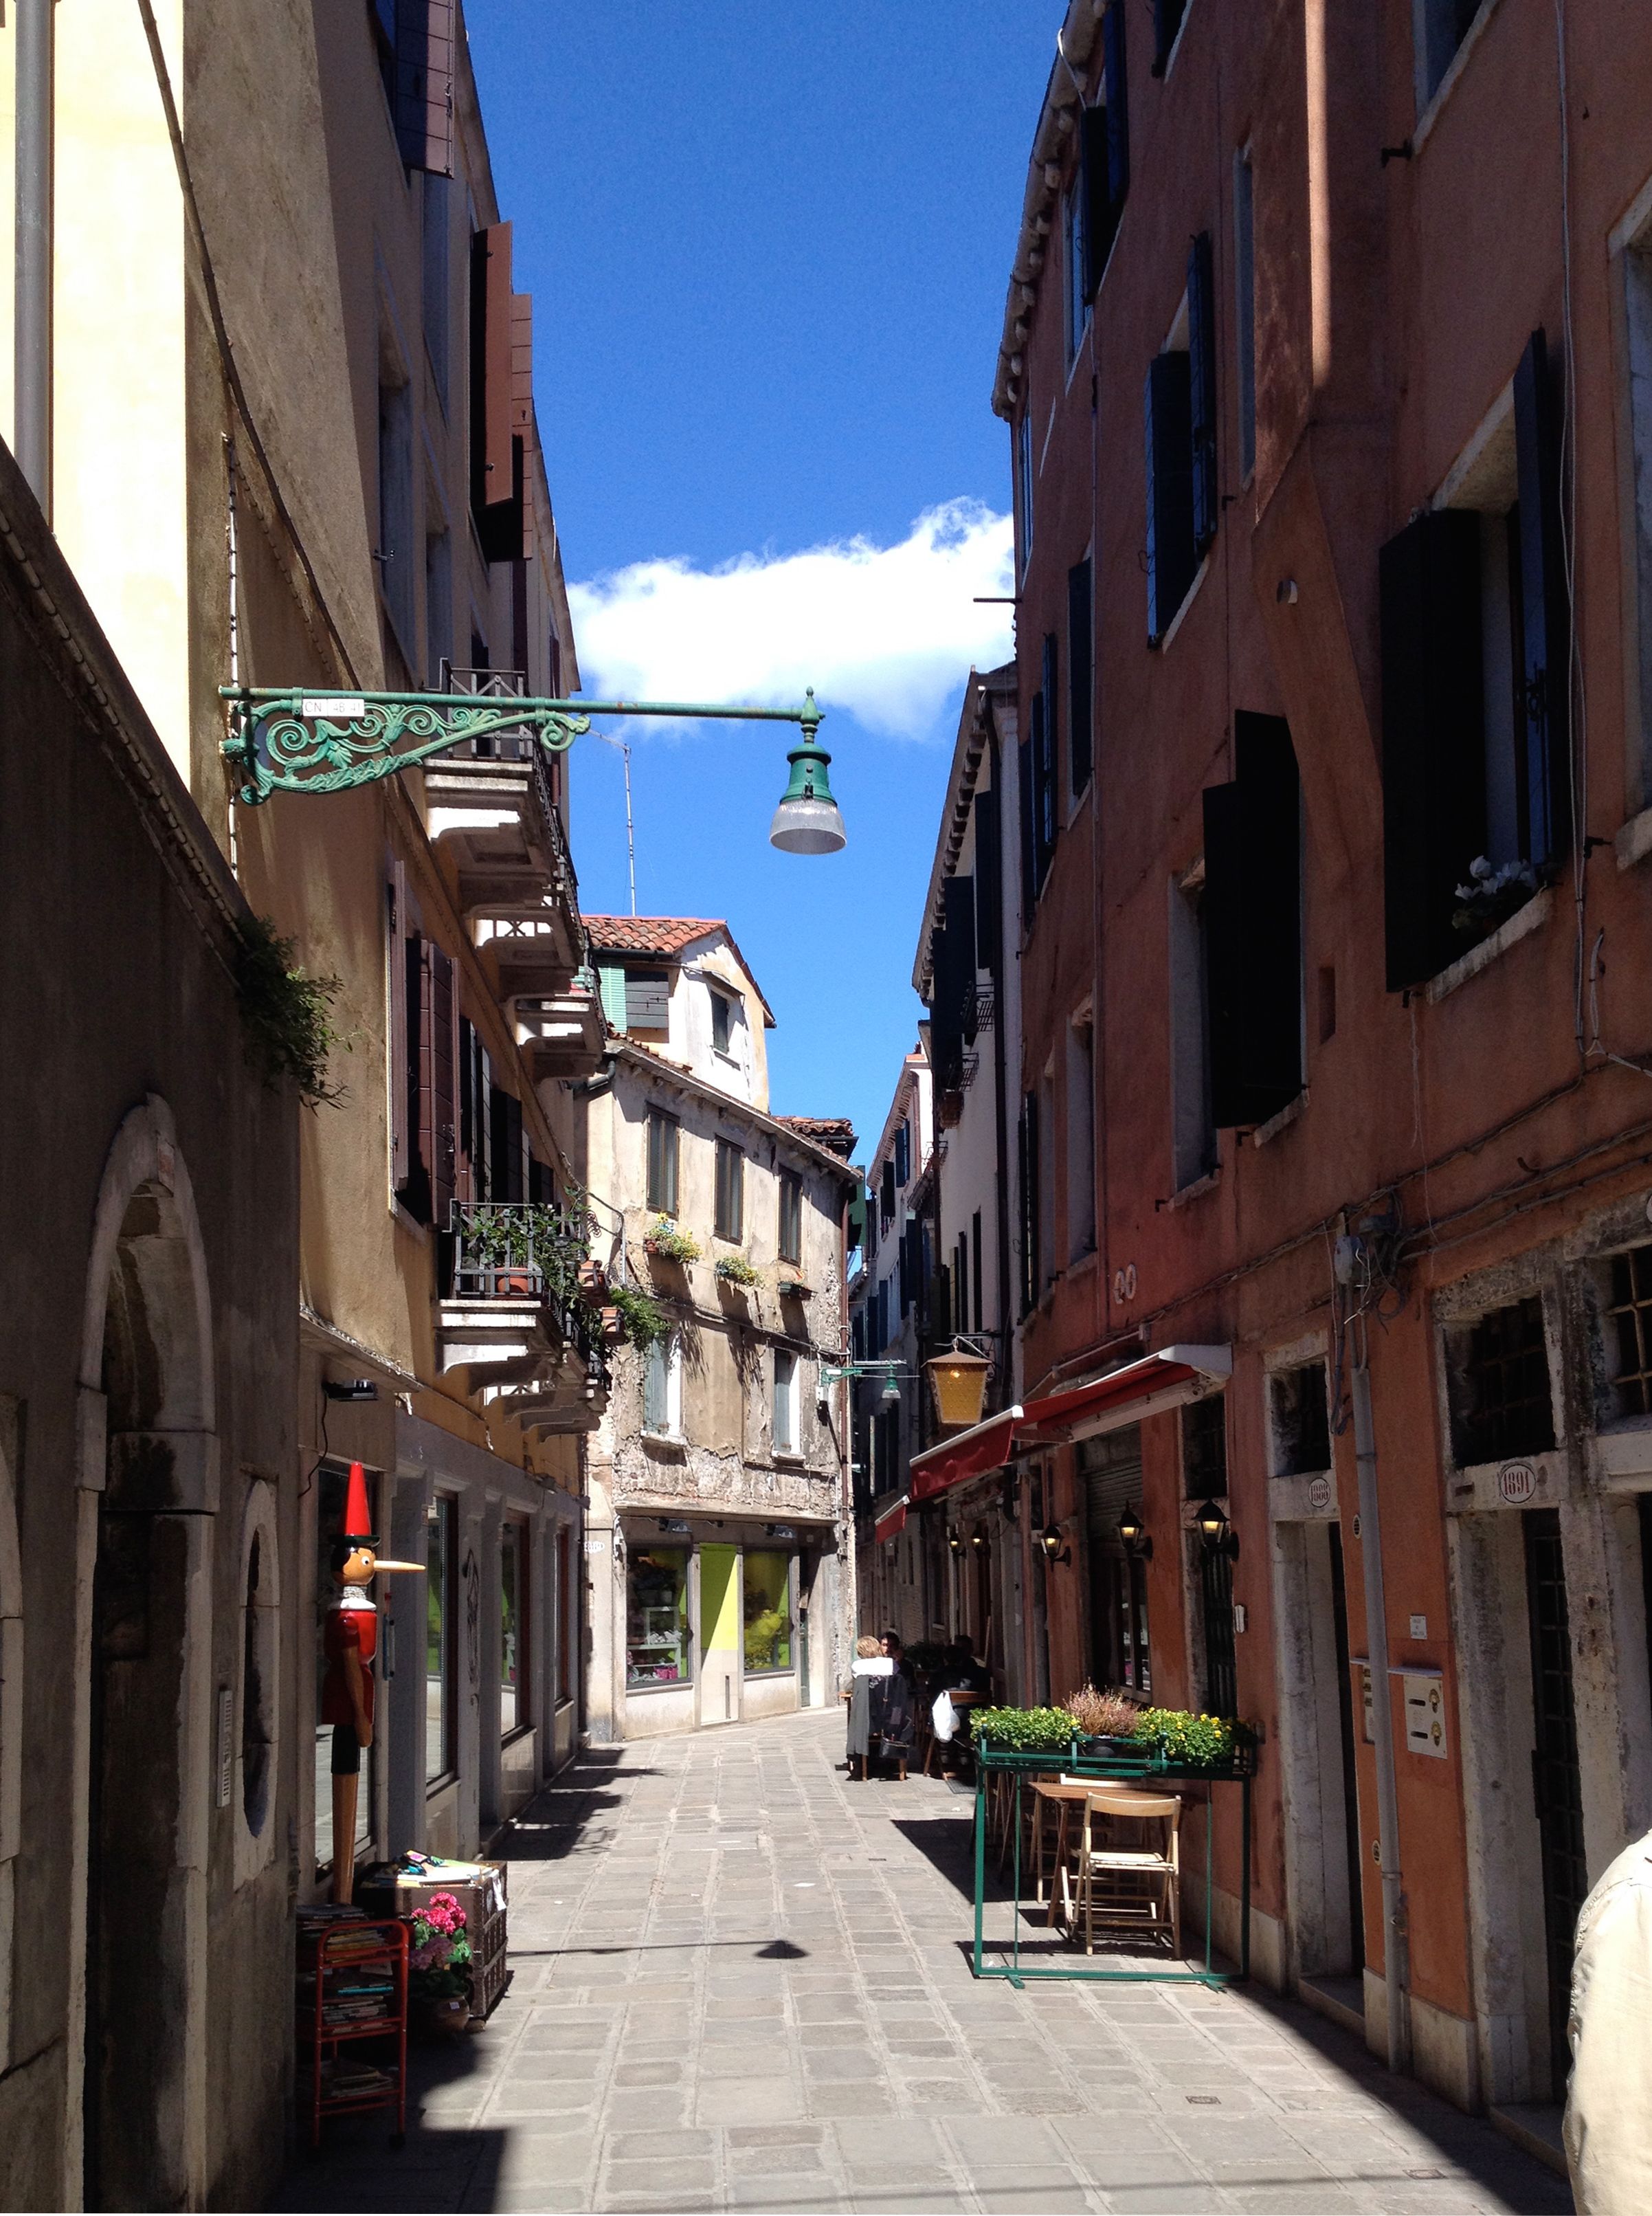 Calle dell'aseo | venezia mia | Pinterest